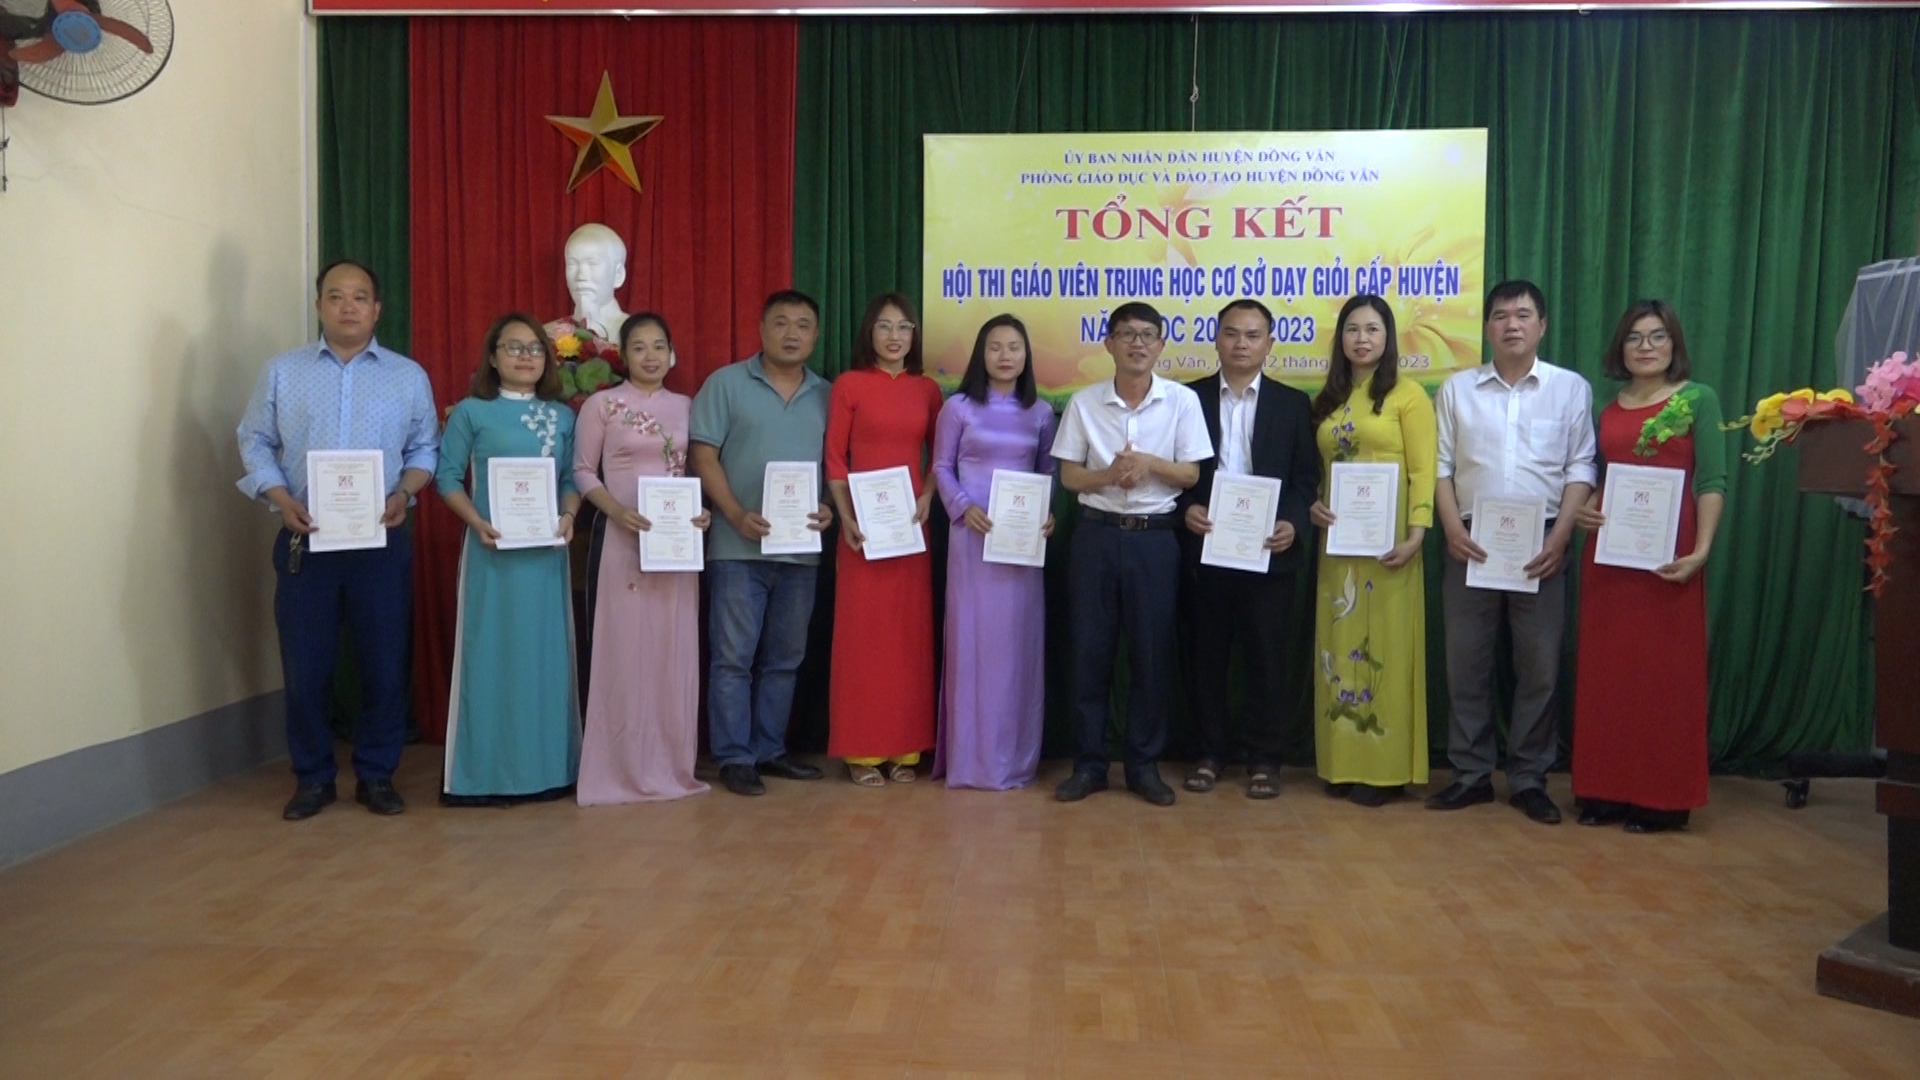 Tổng kết Hội thi giáo viên dạy giỏi cấp huyện bậc THCS năm học 2022 - 2023